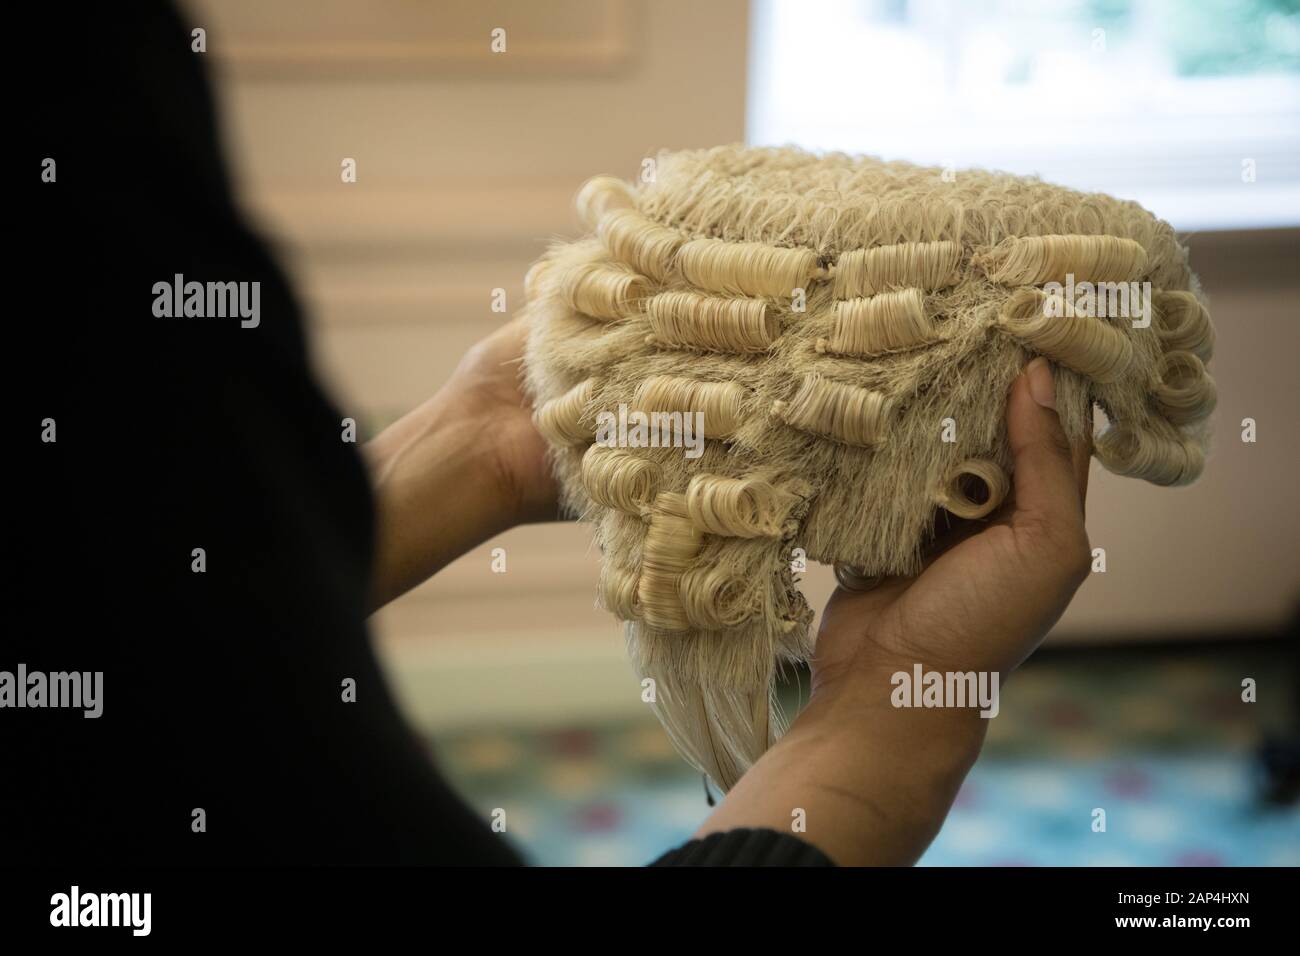 La parrucca trattenuto, indossata da alcuni giudici e avvocati in Inghilterra e nel Galles, noto anche come peruke. Questa foto è stata scattata a una cerimonia di consegna dei diplomi Foto Stock